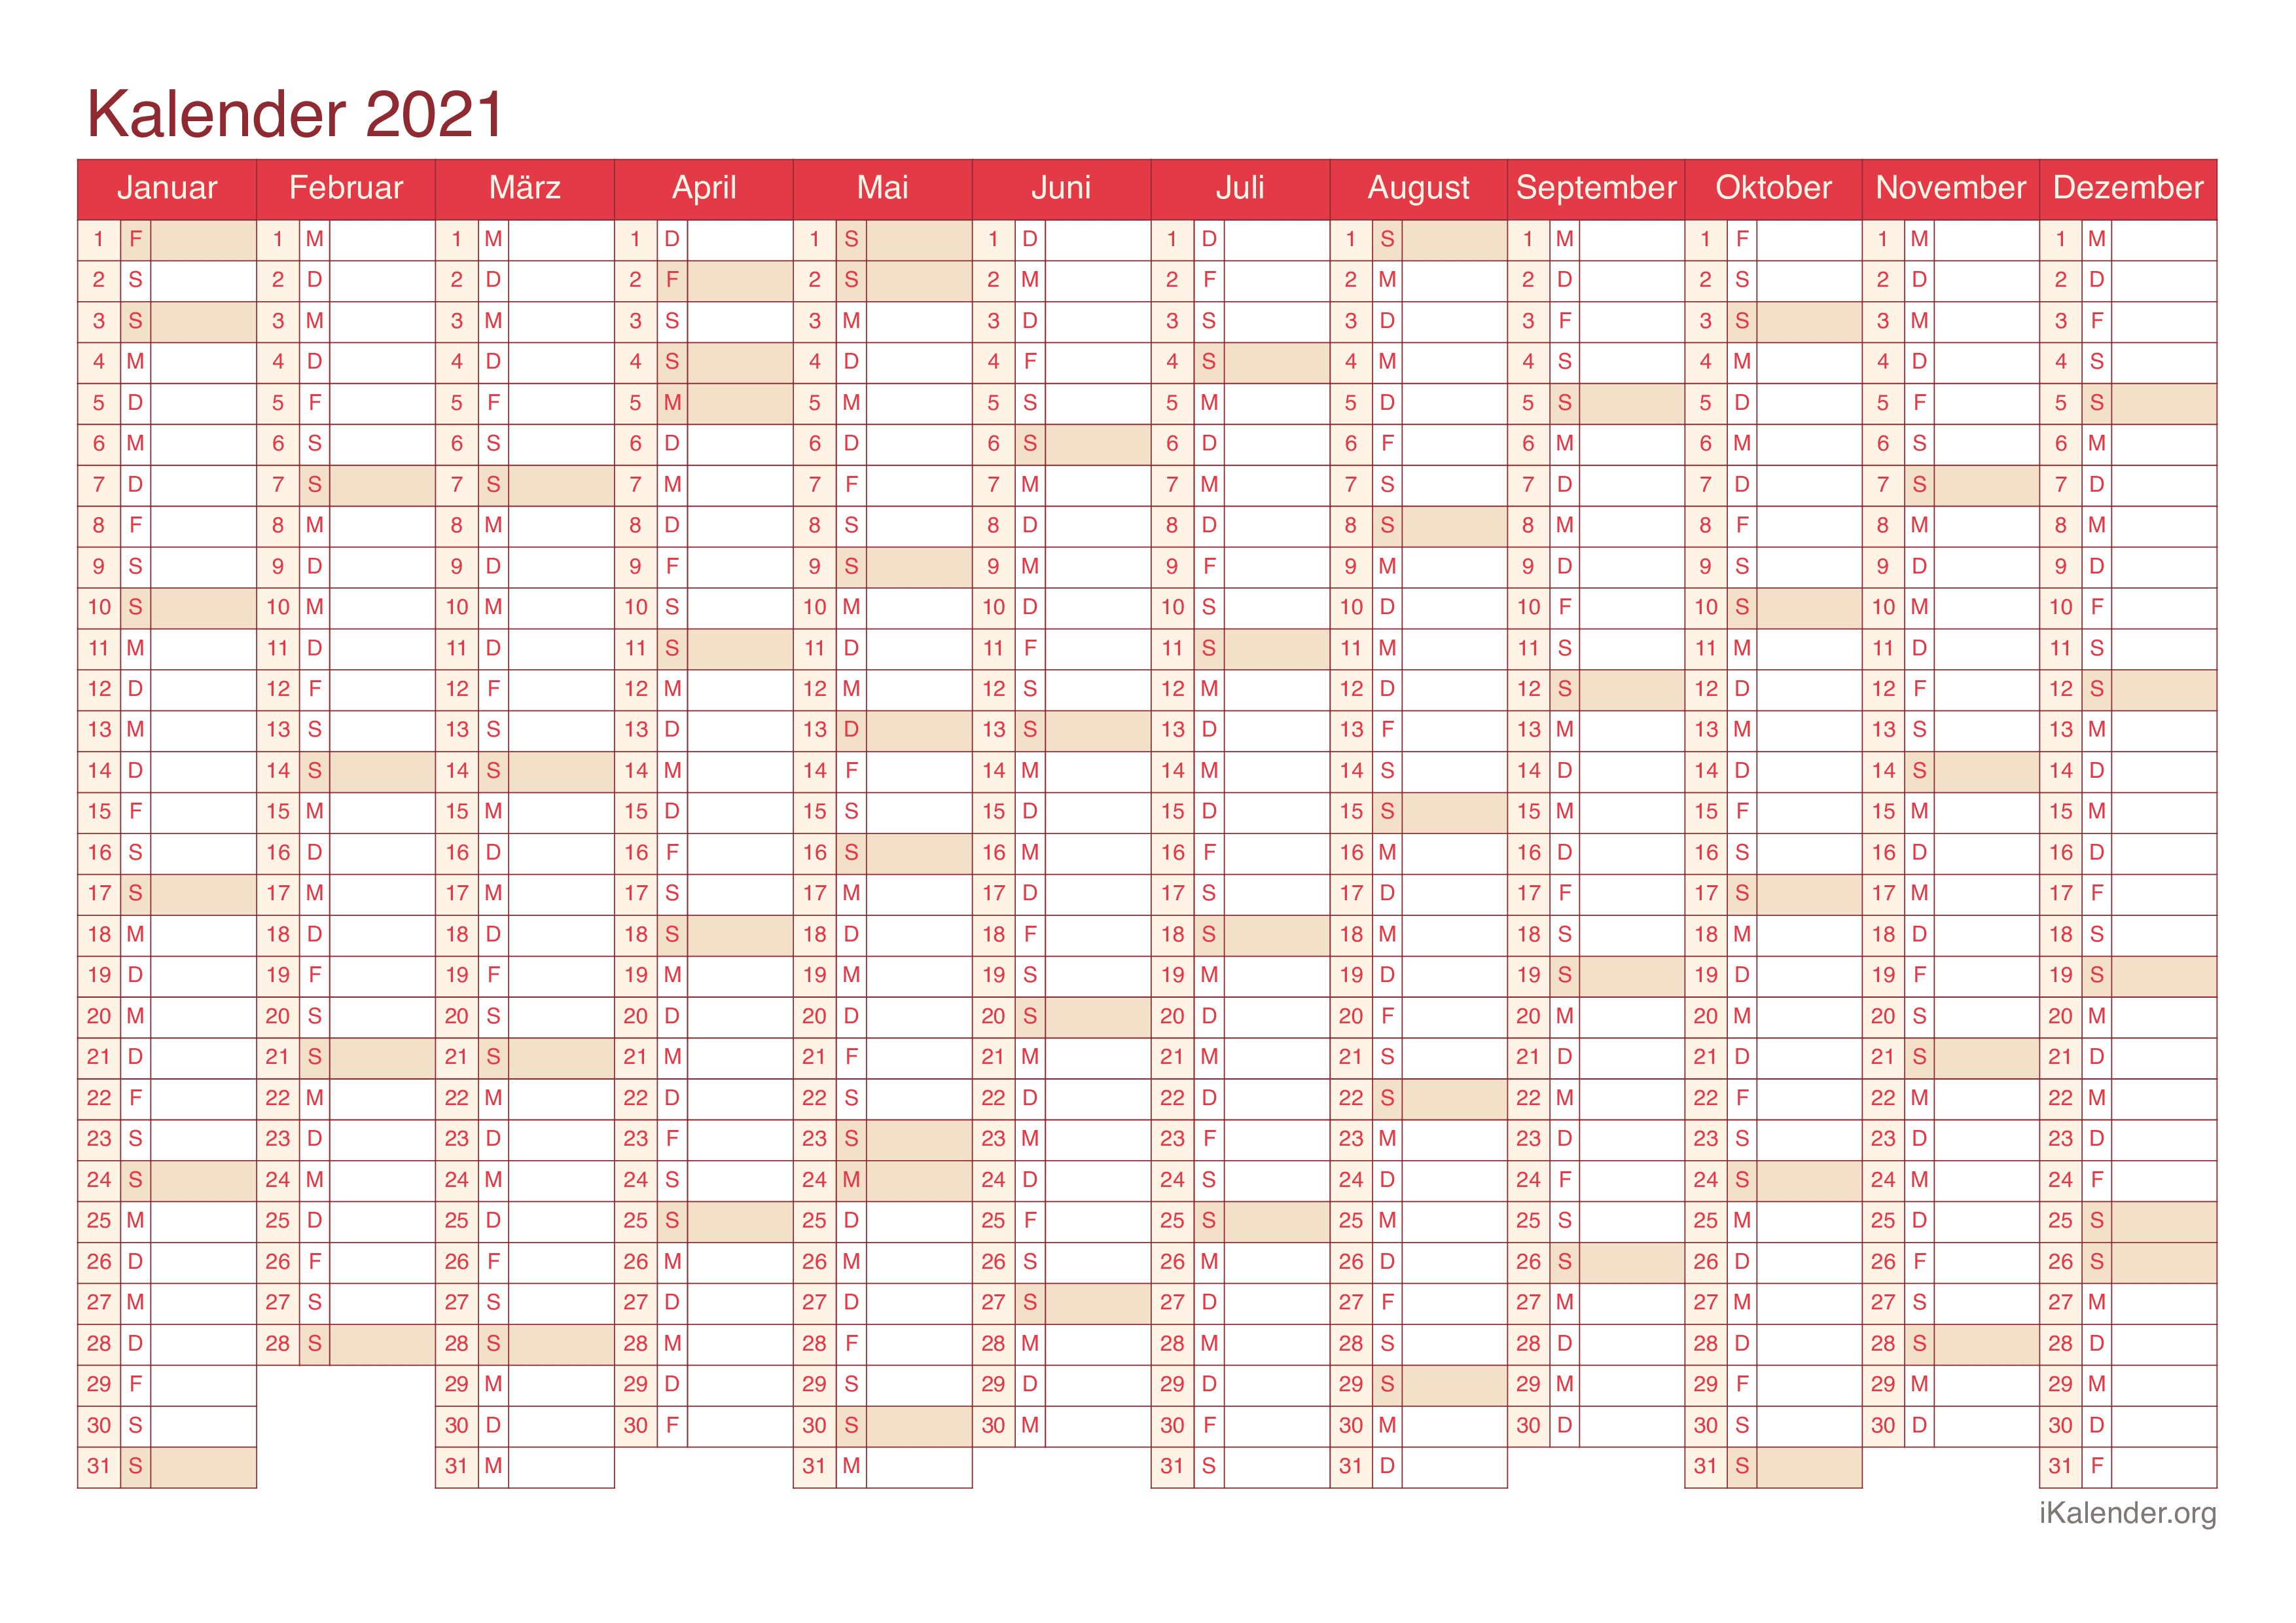 Jahreskalender 2021 - Cherry